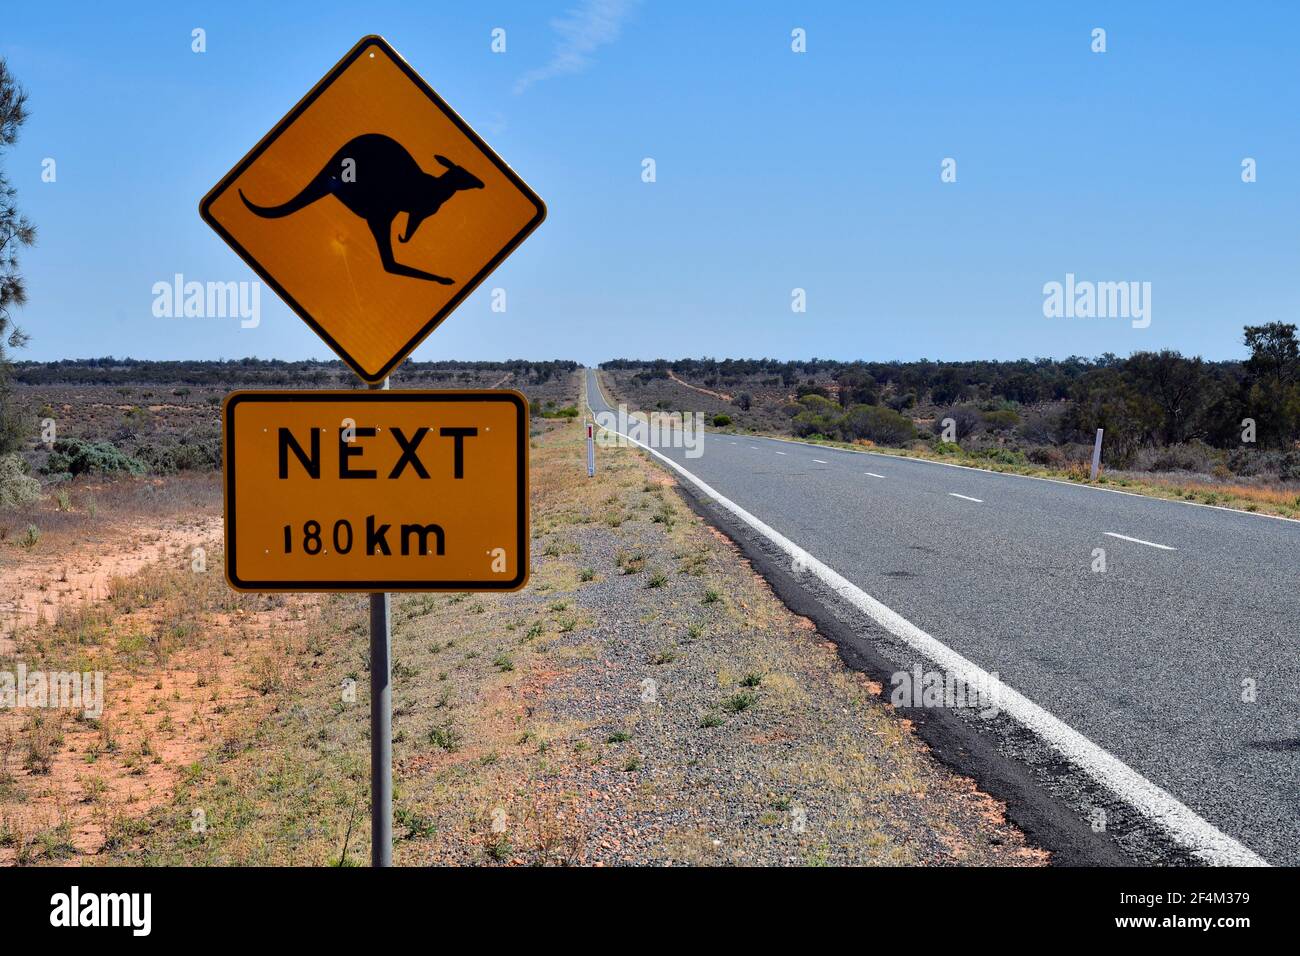 Australien, NSW, Warnzeichen für Animal Crossing auf der silbernen Stadt Autobahn Stockfoto